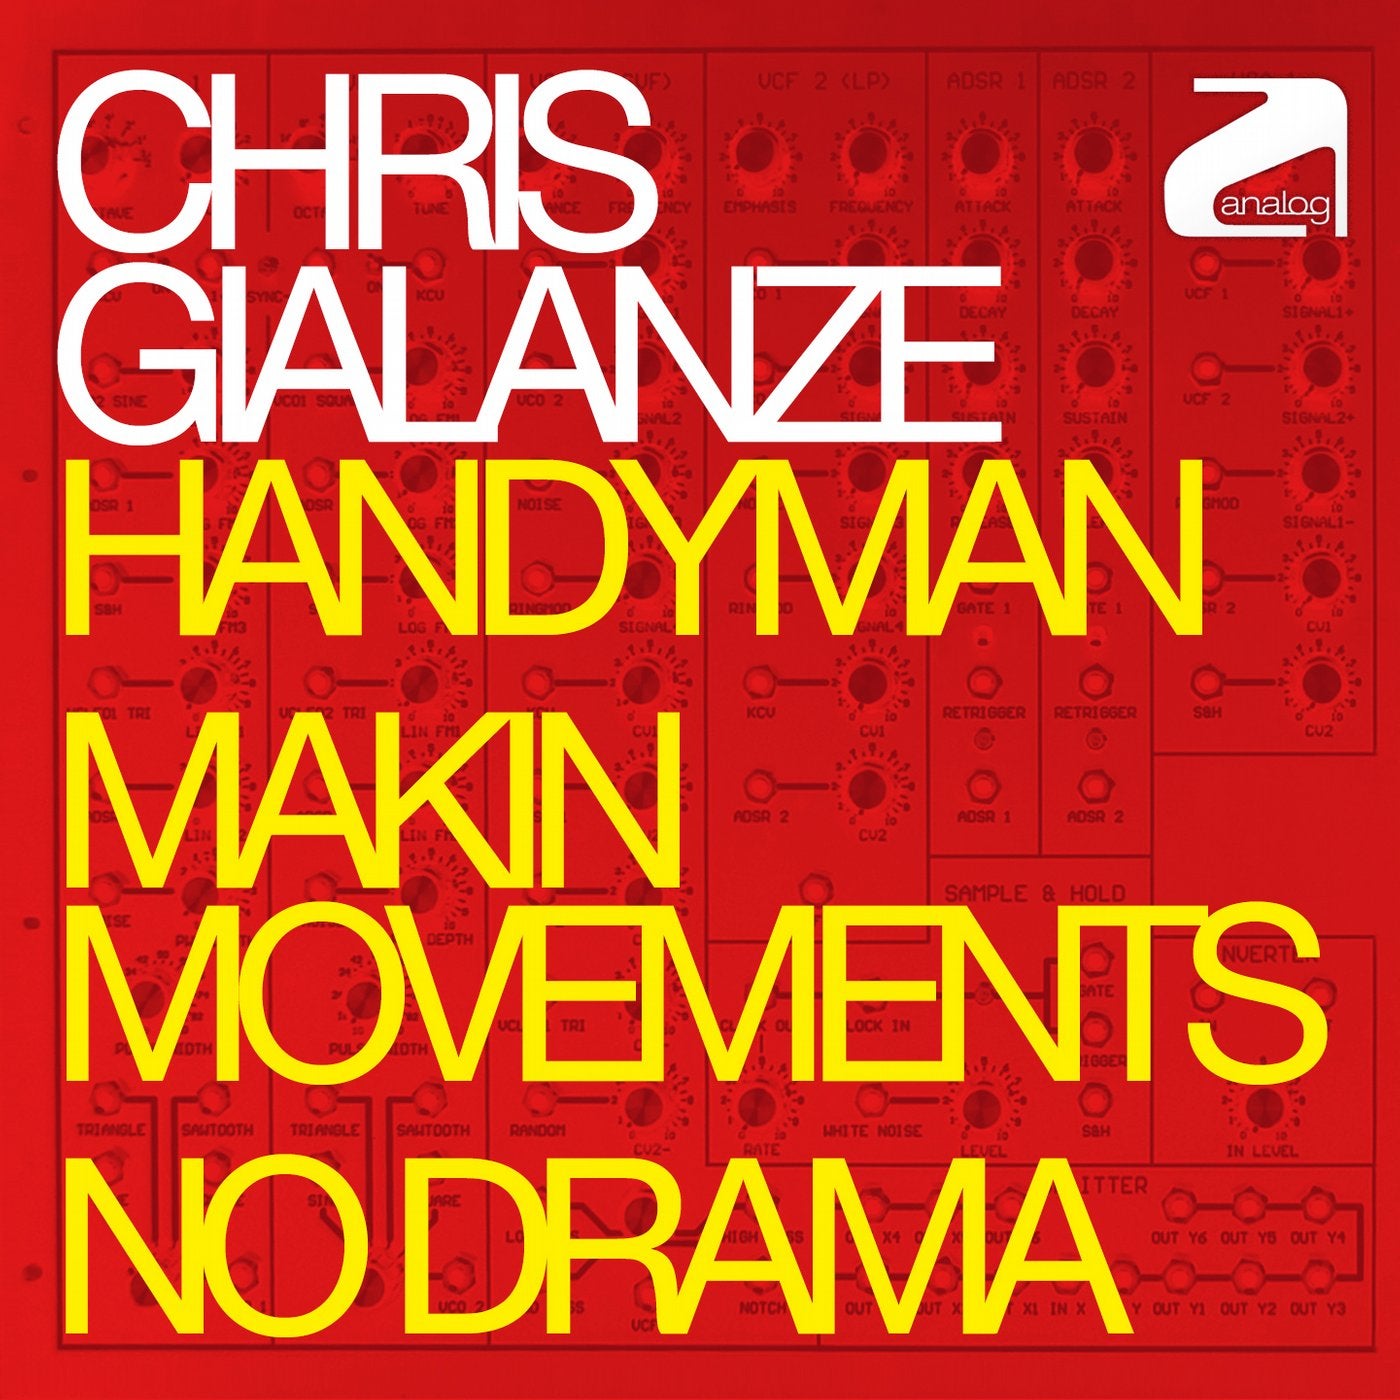 Handyman - Makin Movements - No Drama